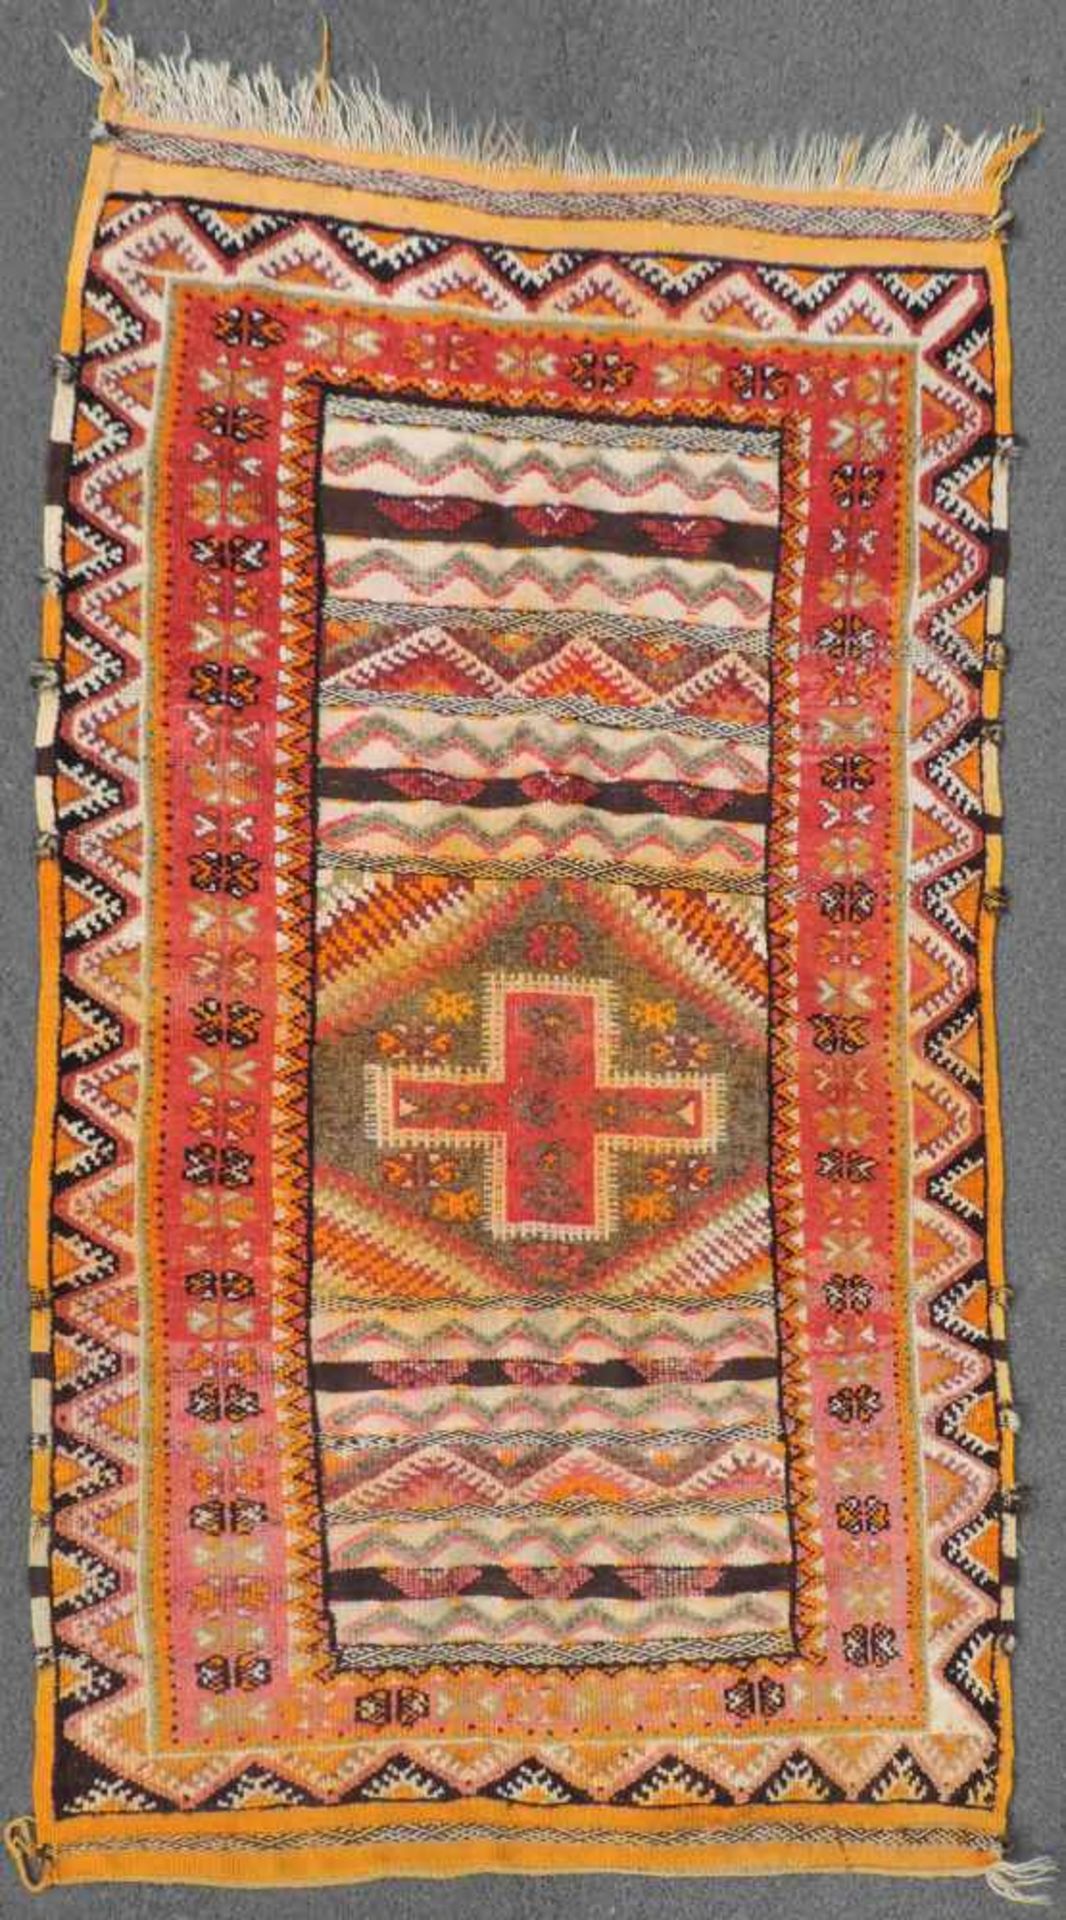 Atlas Teppich. Marokko. Alt, Mitte 20. Jahrhundert. 185 cm x 103 cm. Handgeknüpft und handgewebt.